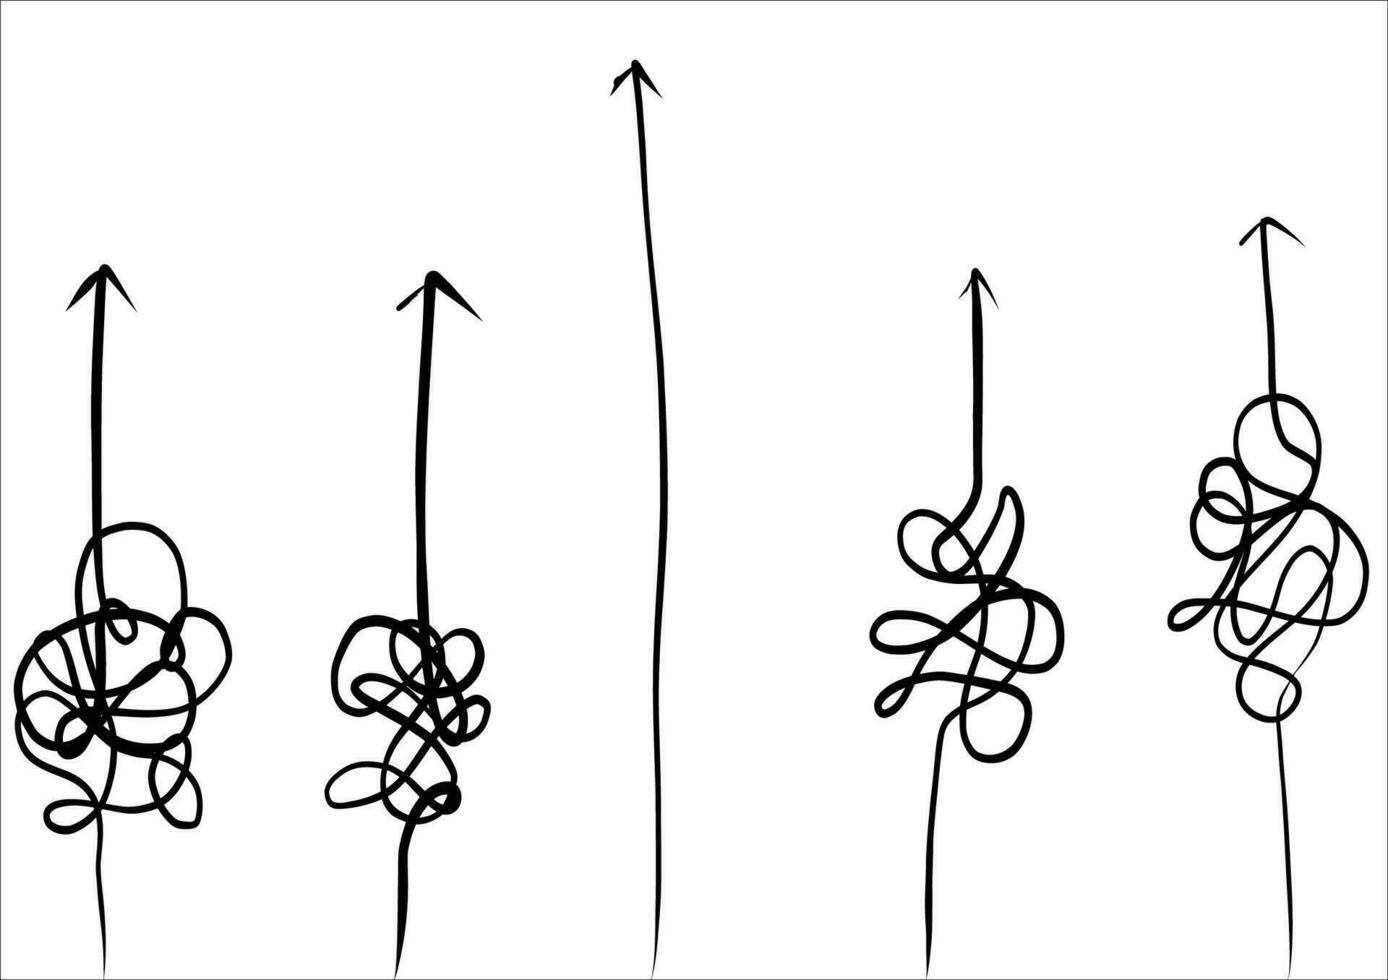 astratto e facile semplice linea a partire dal inizio per fine vettore illustrazione impostare.continuo uno linea disegno.